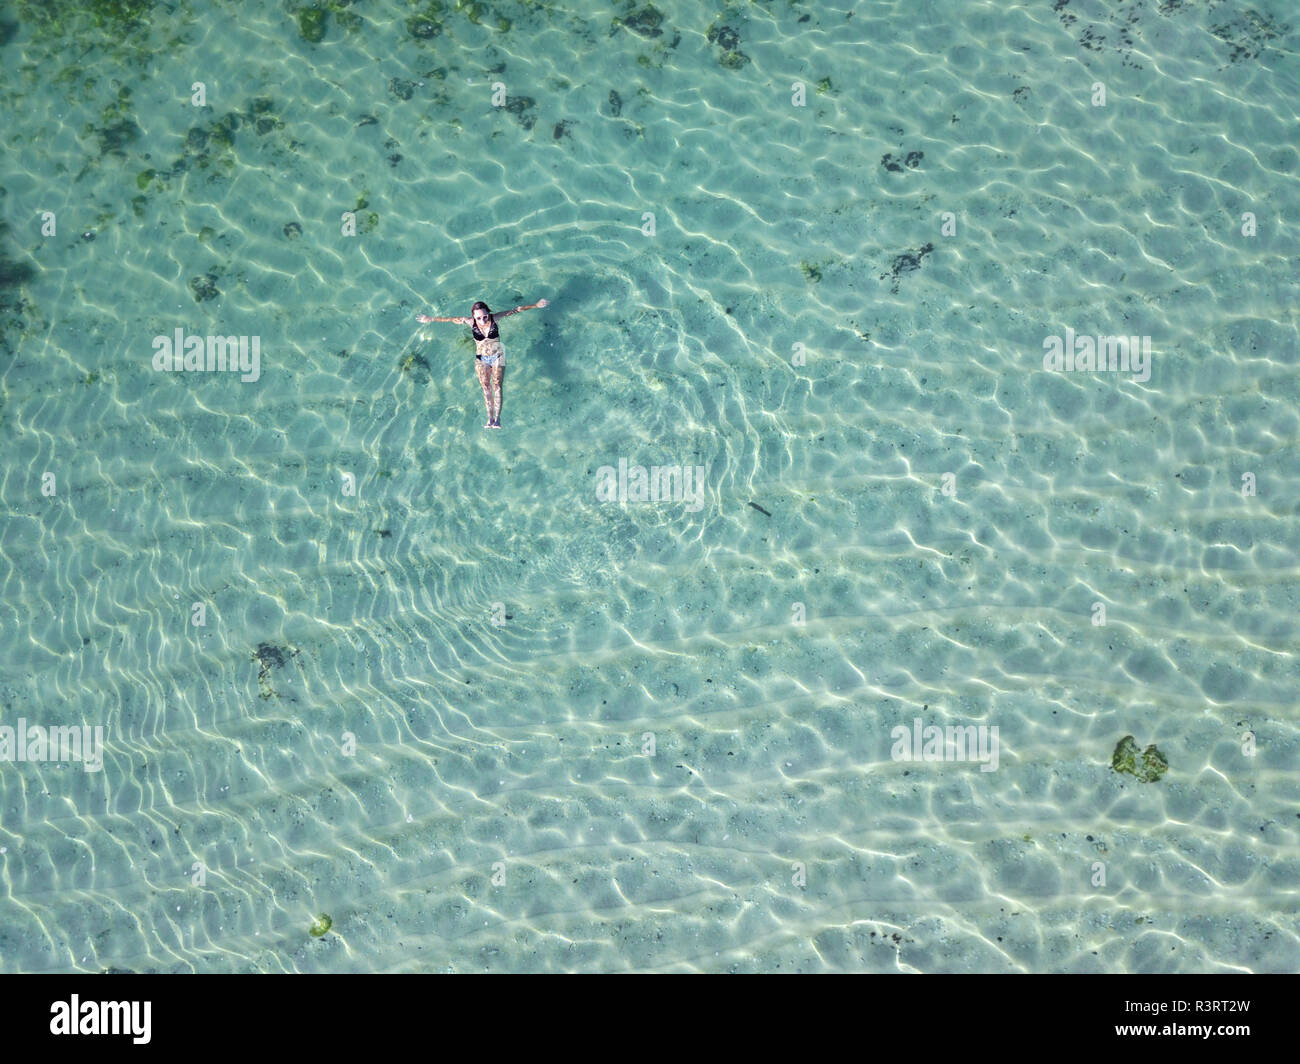 Indonesia, Bali, Melasti, vista aerea del Karma Kandara beach, donna galleggiante sull'acqua Foto Stock